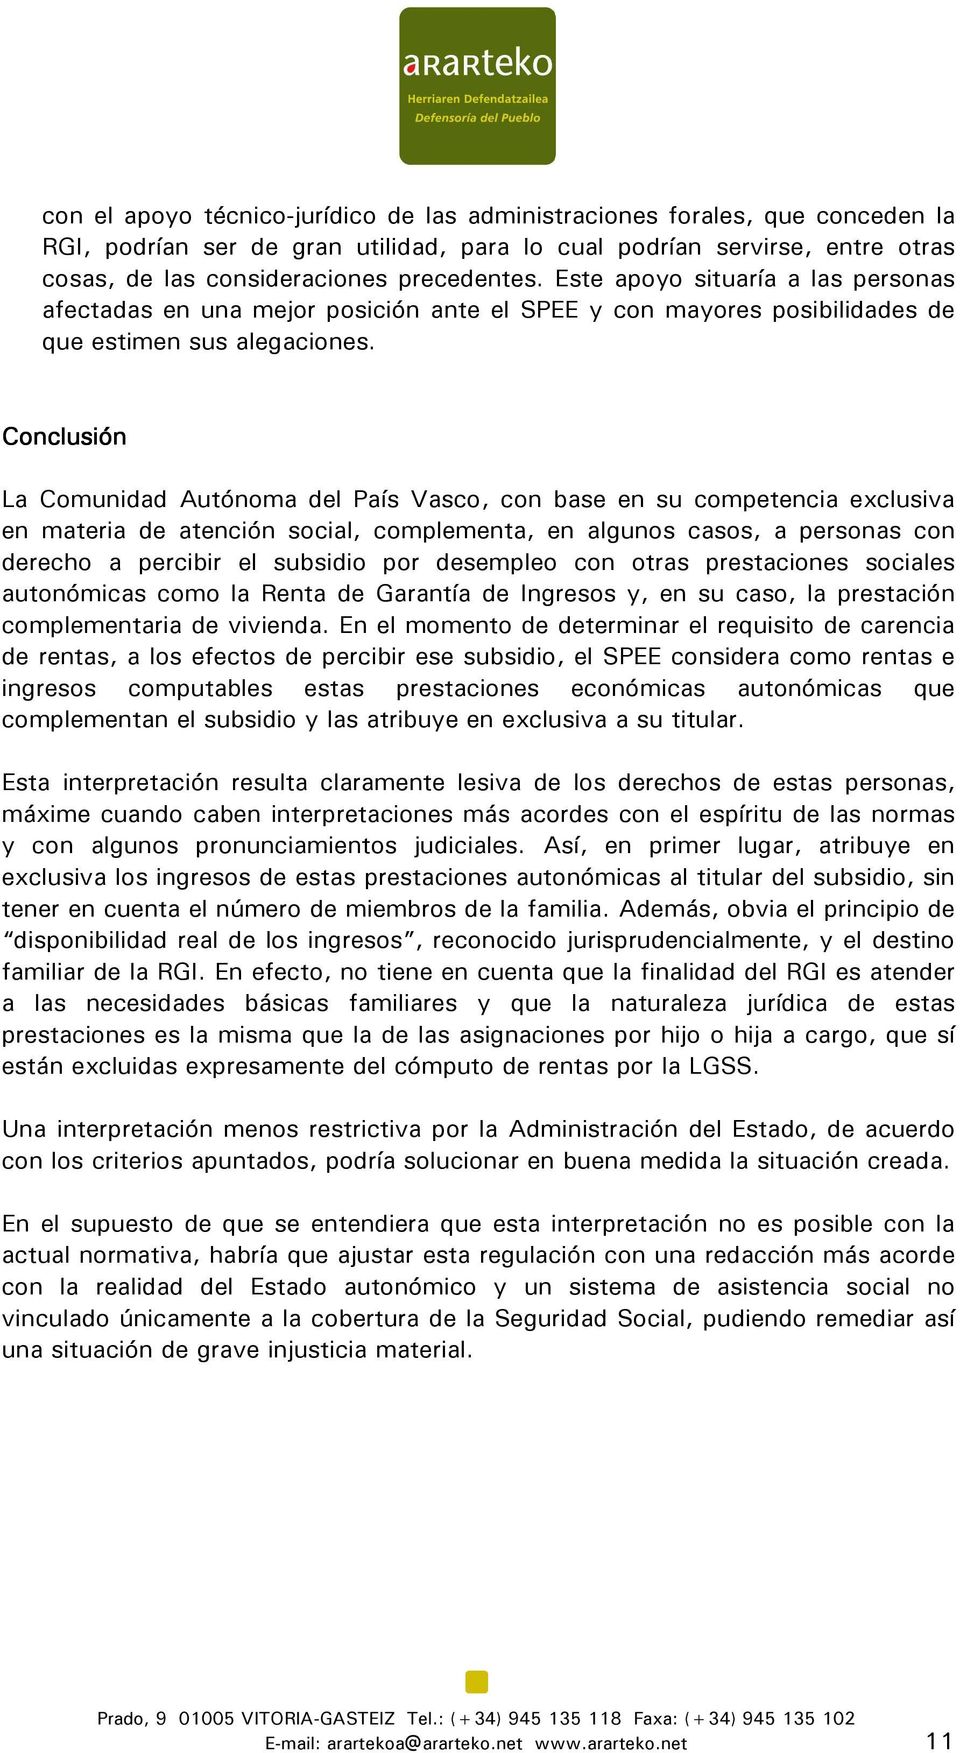 Conclusión La Comunidad Autónoma del País Vasco, con base en su competencia exclusiva en materia de atención social, complementa, en algunos casos, a personas con derecho a percibir el subsidio por